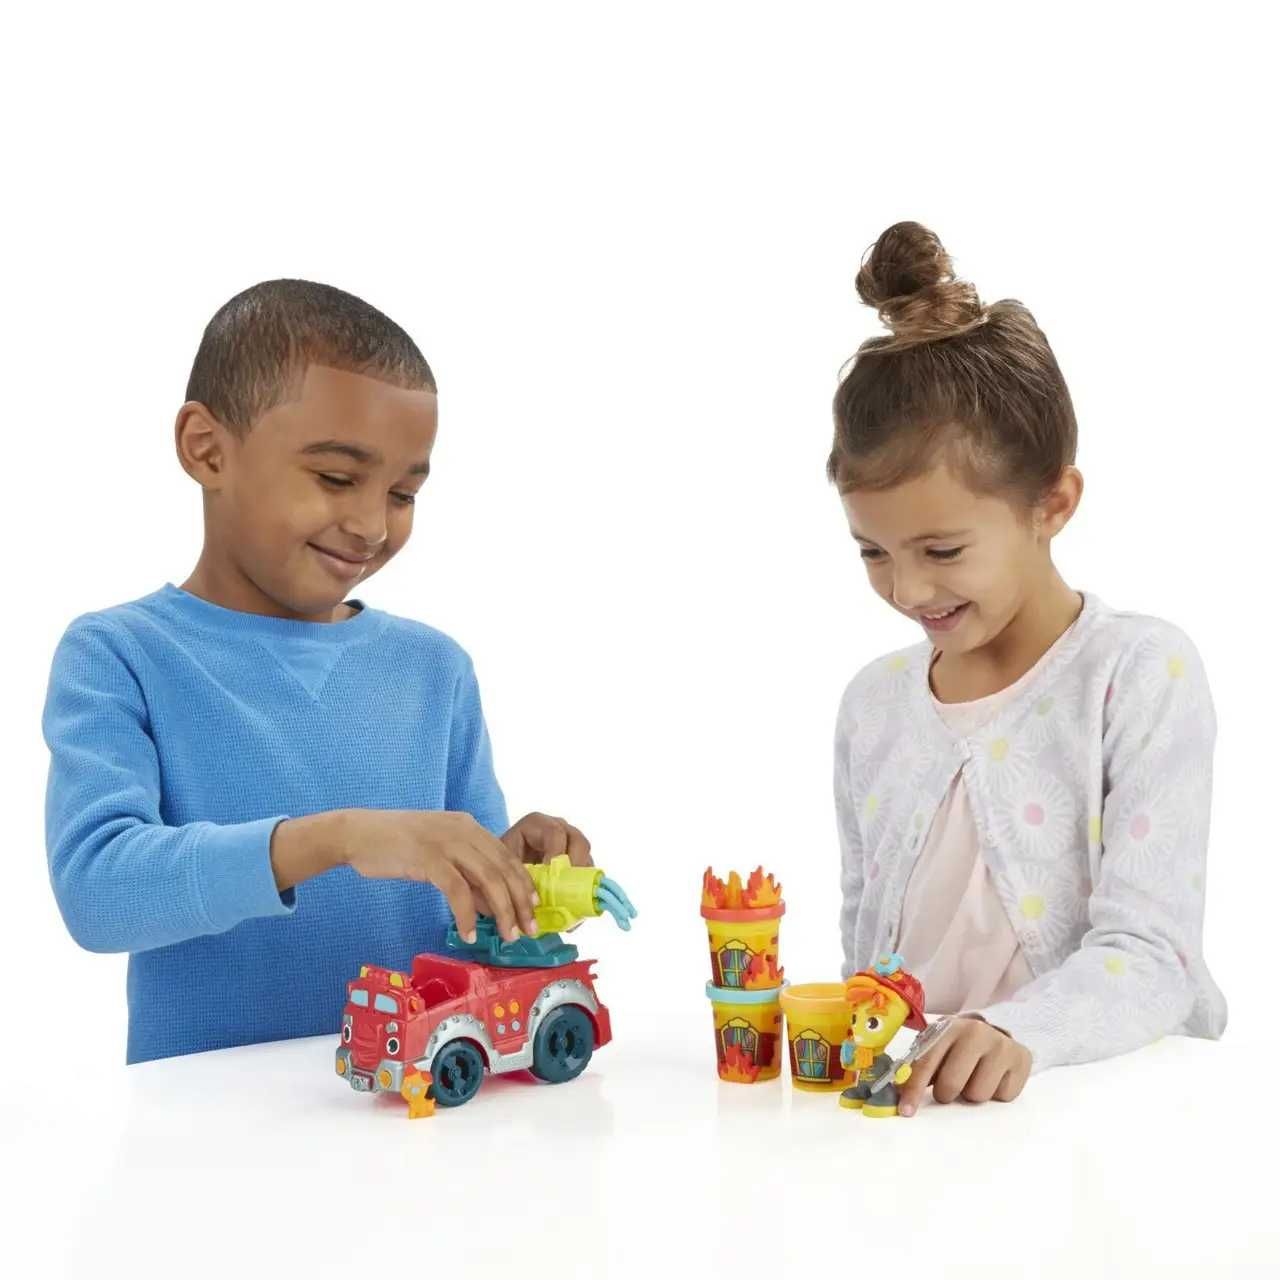 Игровой набор Play-Doh Town "Пожарная машина" оригинал Hasbro